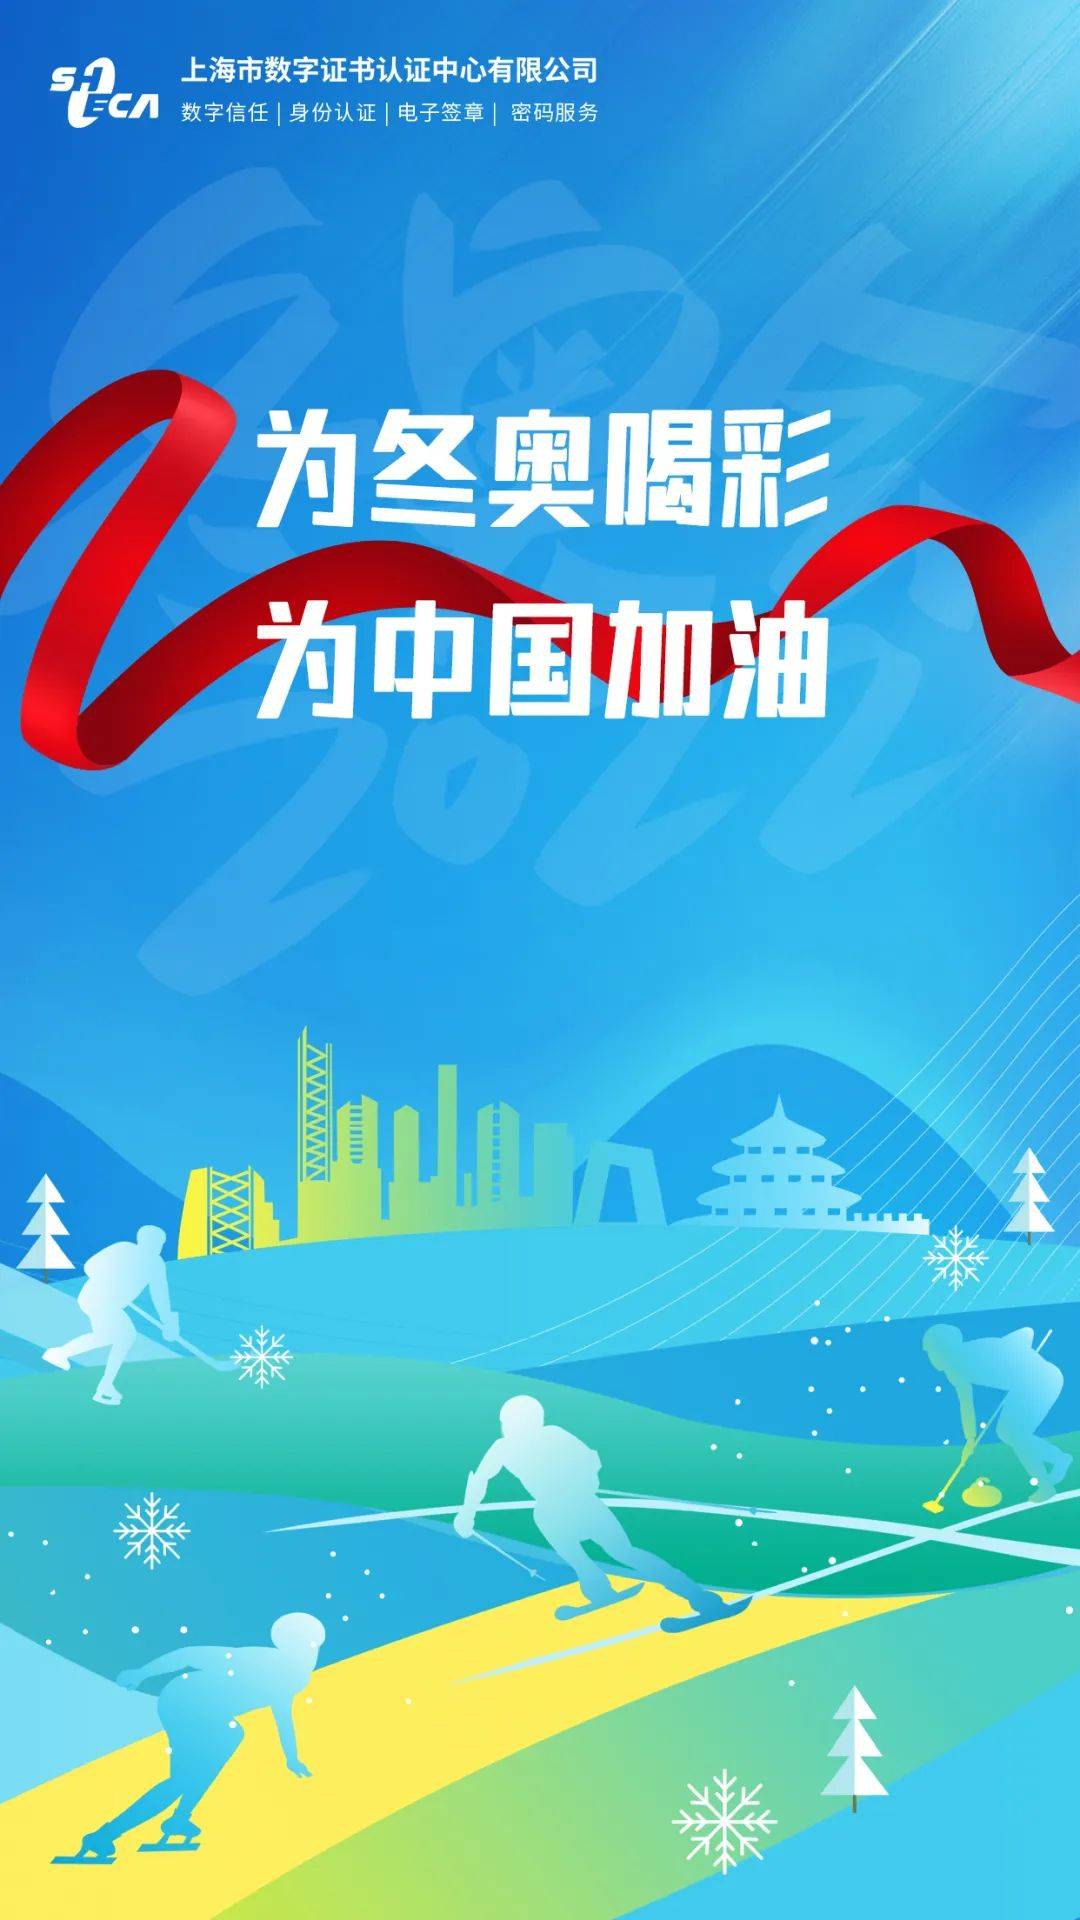 冬奥会为中国健儿加油图片